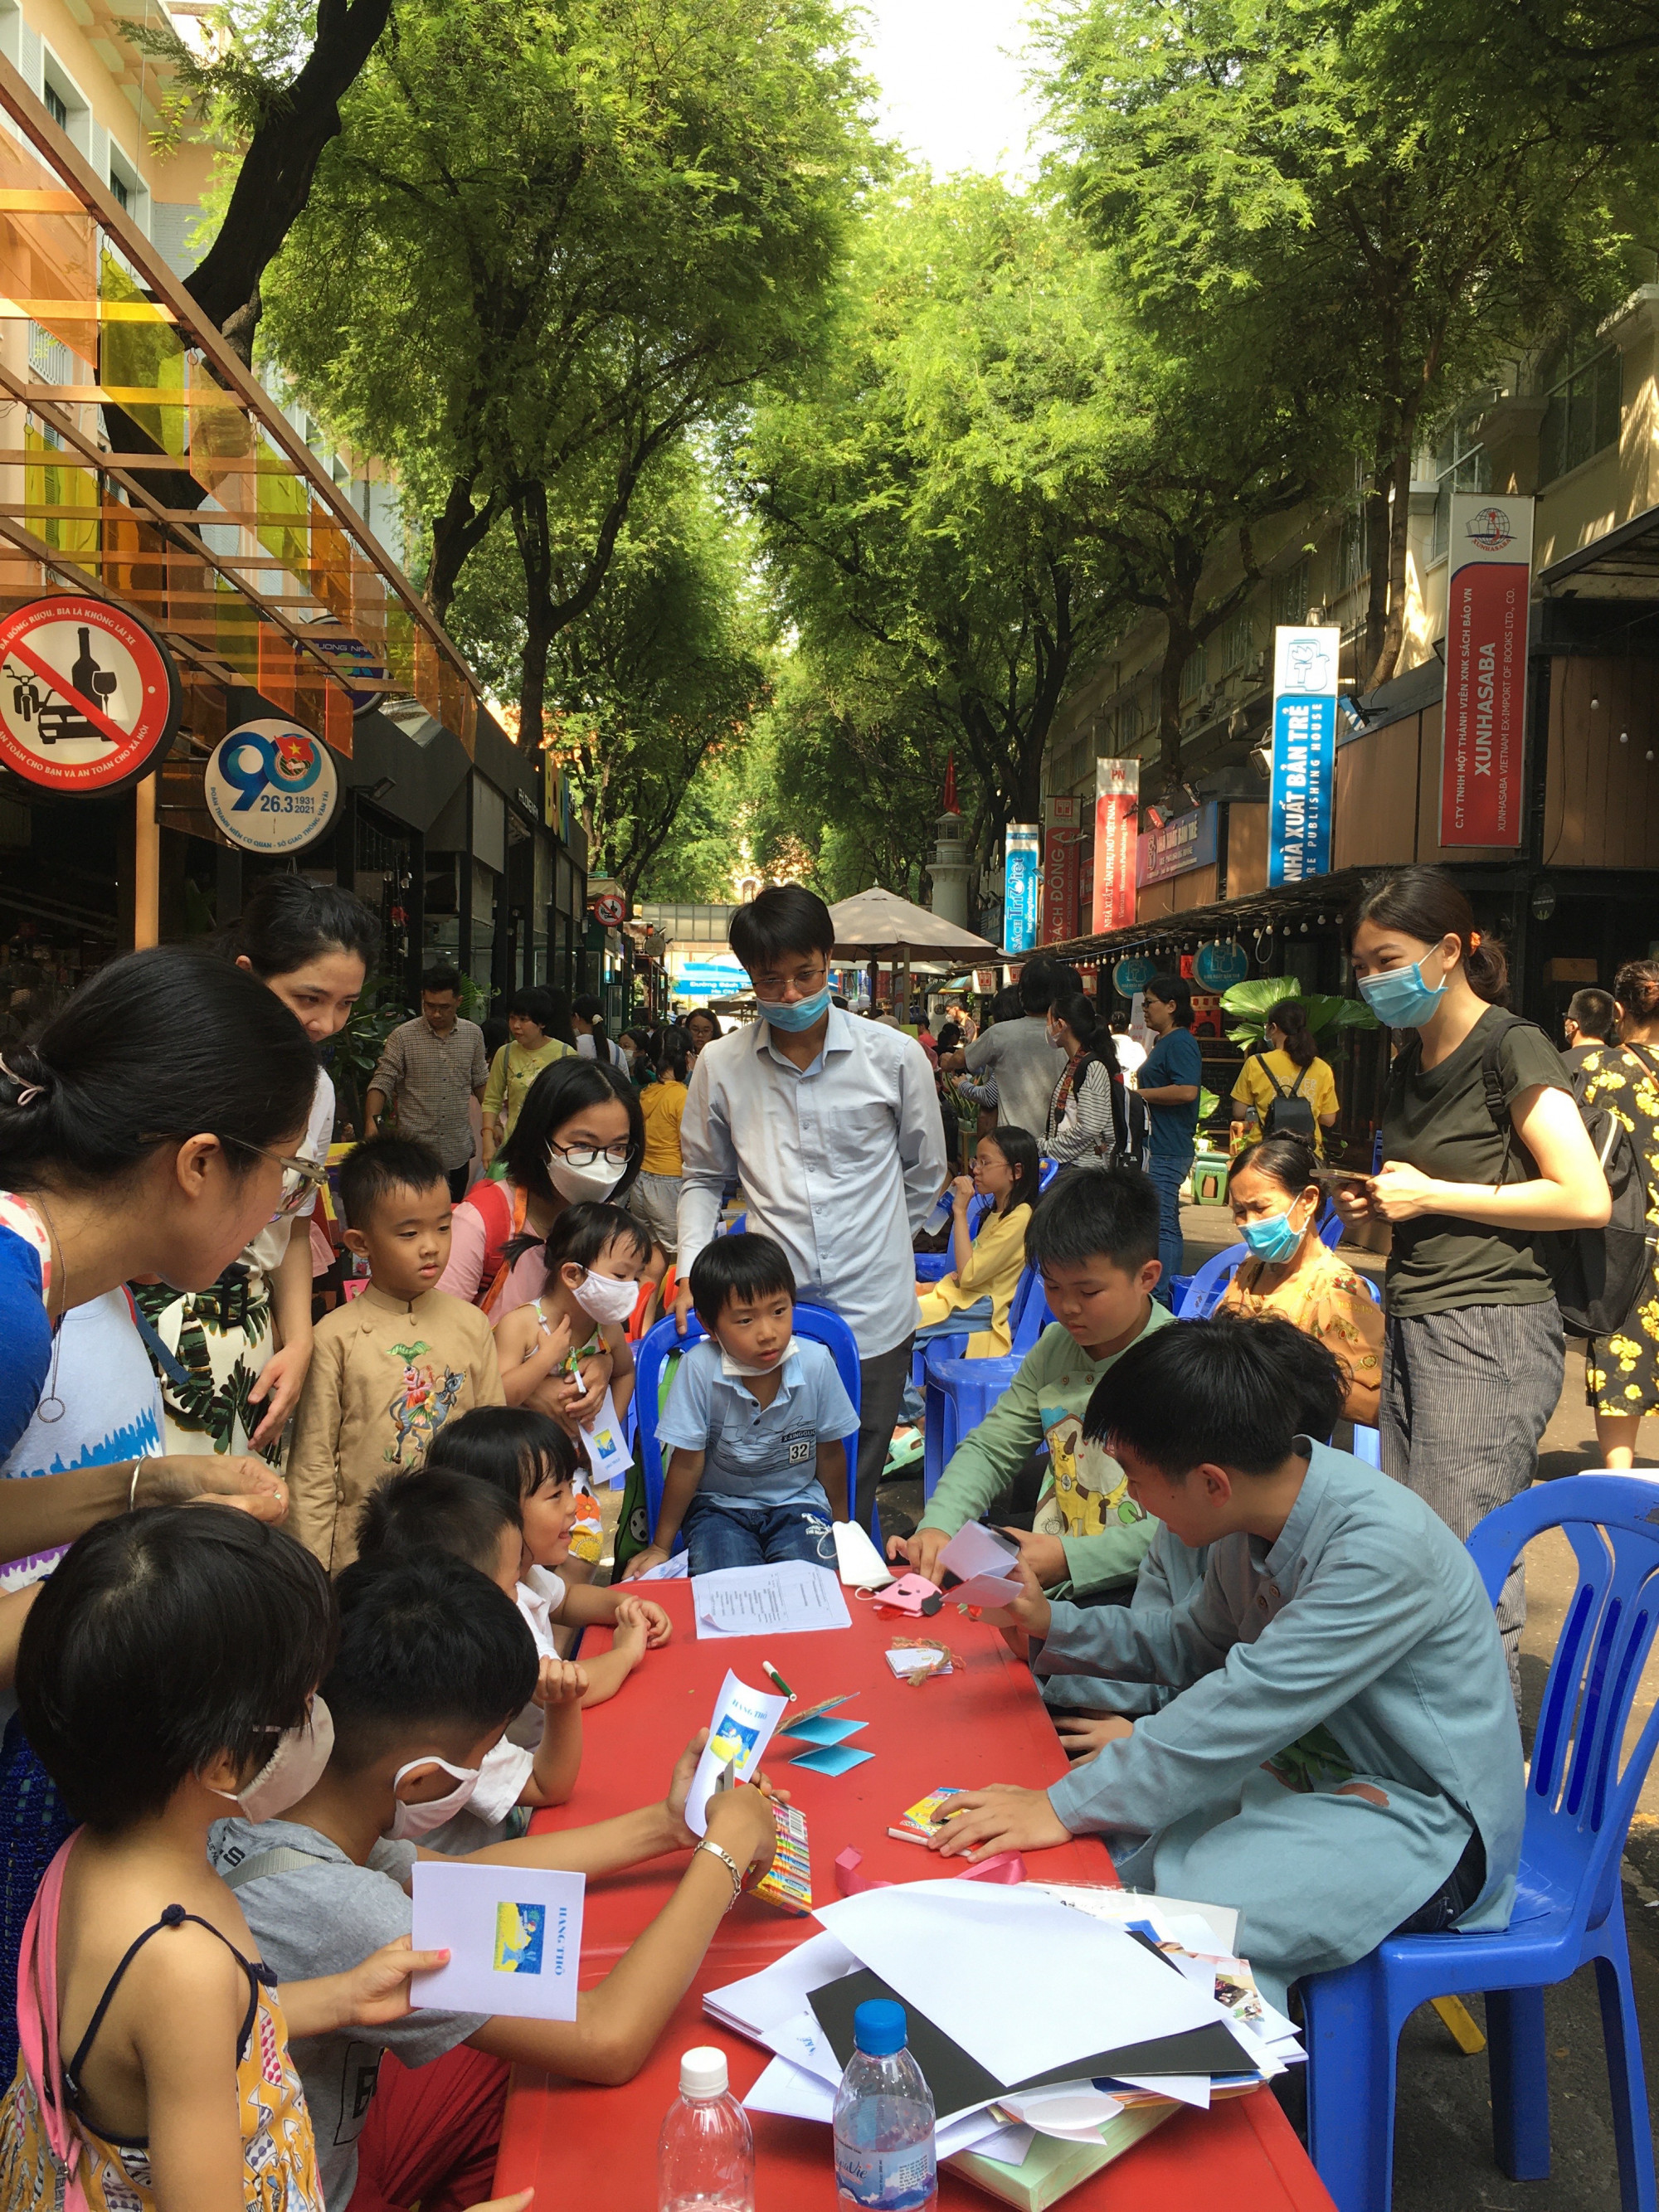 Cùng sáng tạo câu chuyện và vẽ tranh-sân chơi dành cho các bạn nhỏ do nhà xuất bản Phụ Nữ Việt Nam tổ chức, tại Đường sách TPHCM vào ngày 11/6